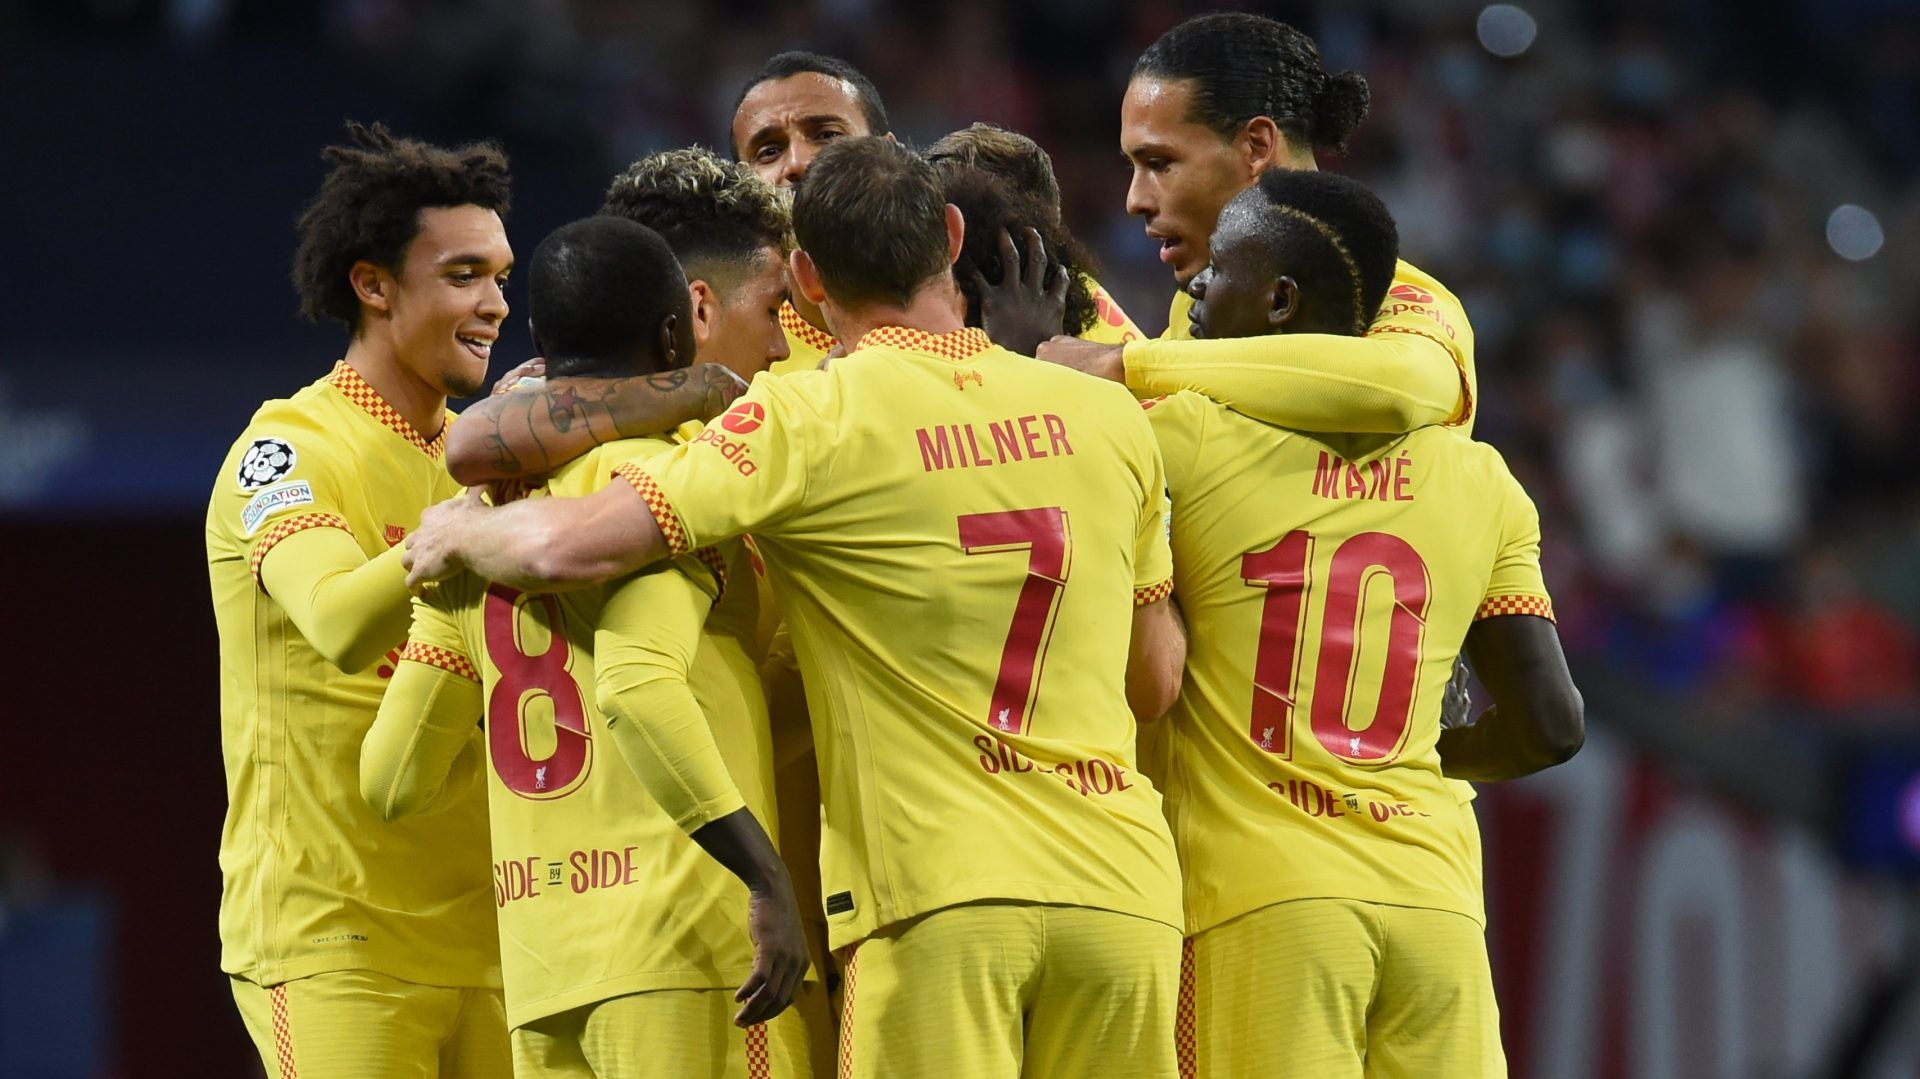 Vídeo: Liverpool gana como visitante ante el Atlético de Madrid y sigue con paso perfecto